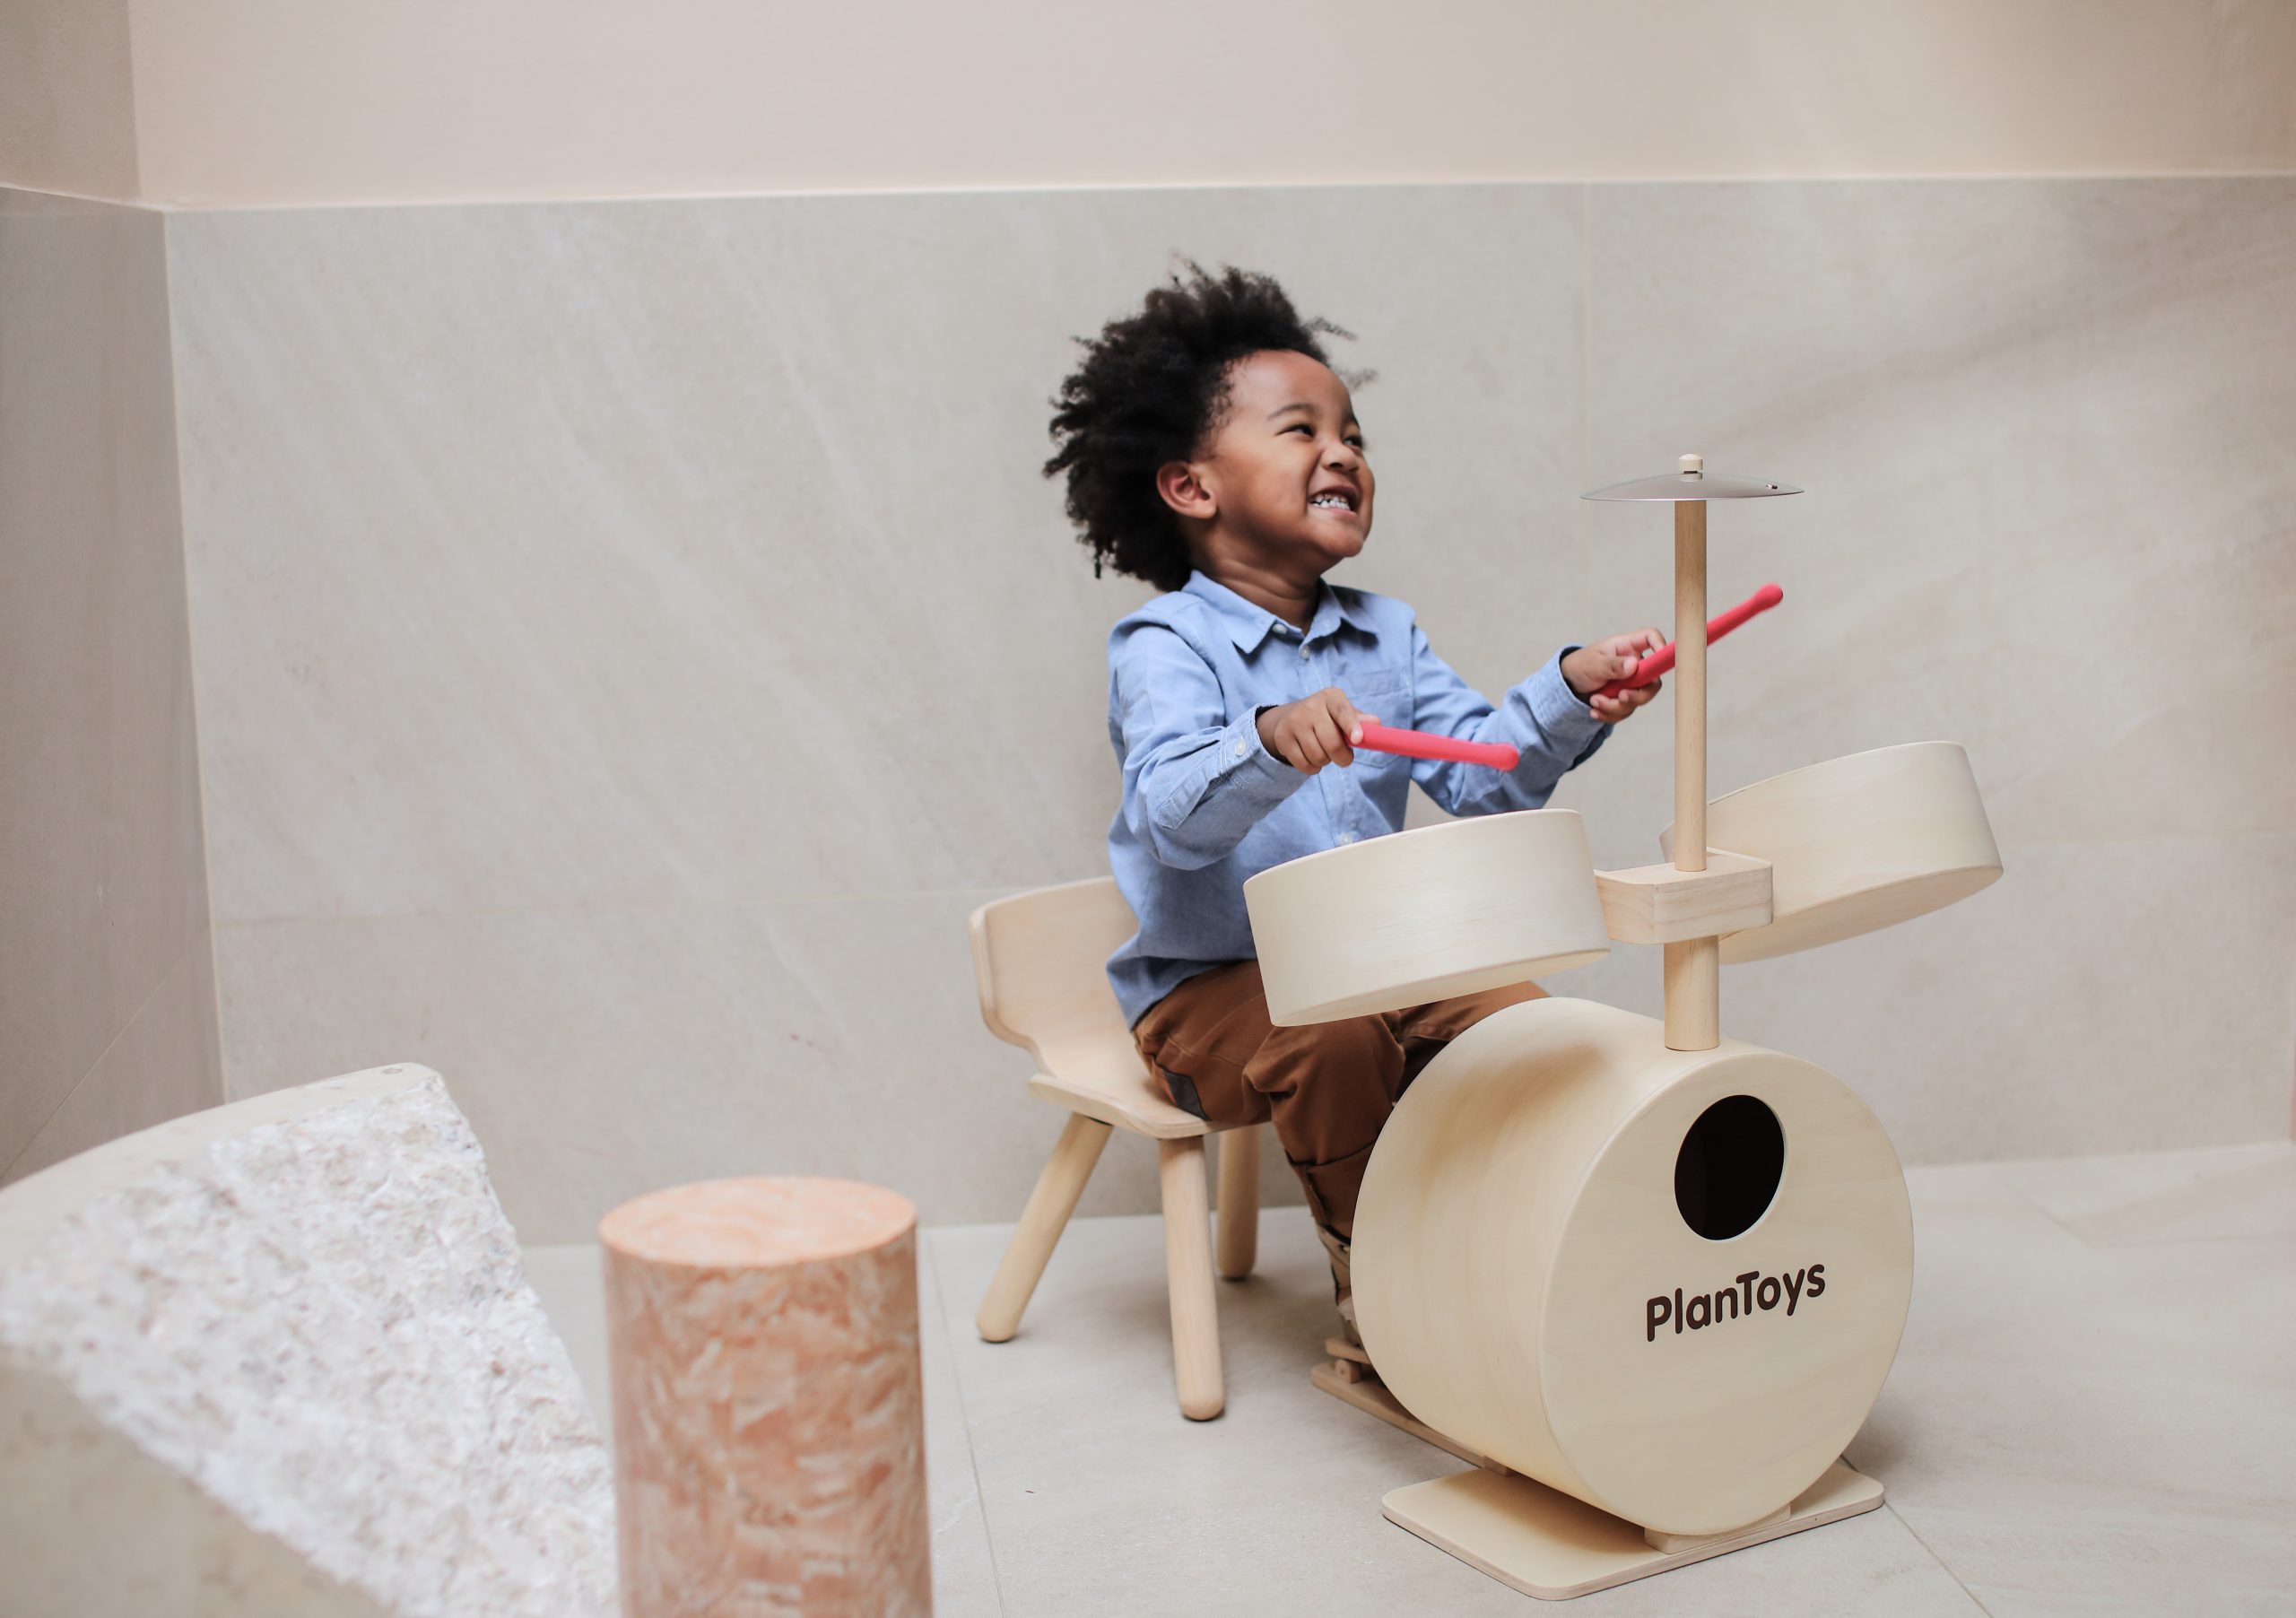 moe kussen Archeologie Rock on! Plan Toys maakte een houten drumstel voor kinderen - minimixtape